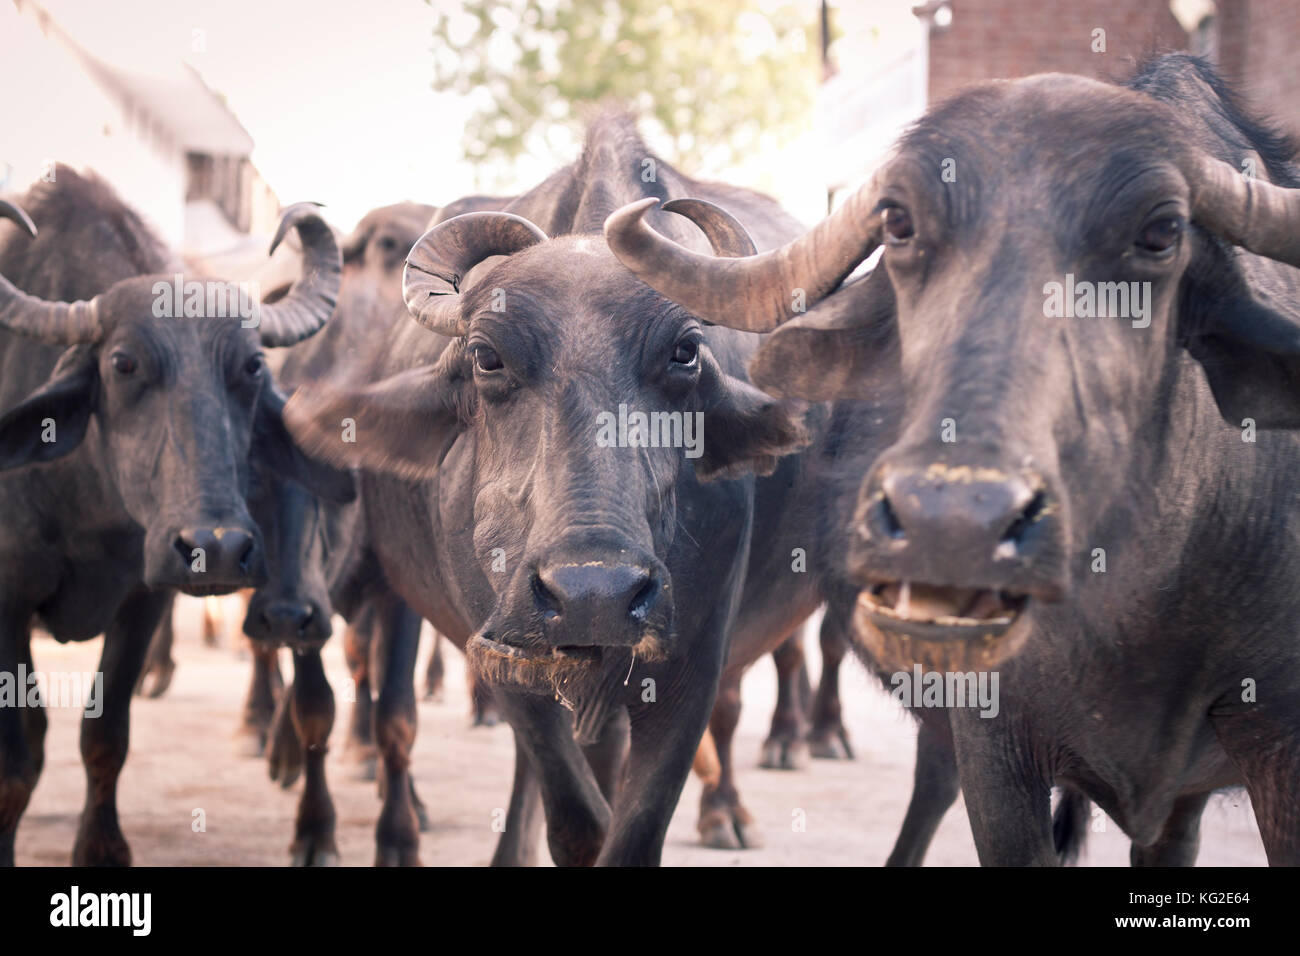 Les vaches indiennes en noir à l'objectif de l'appareil photo Banque D'Images